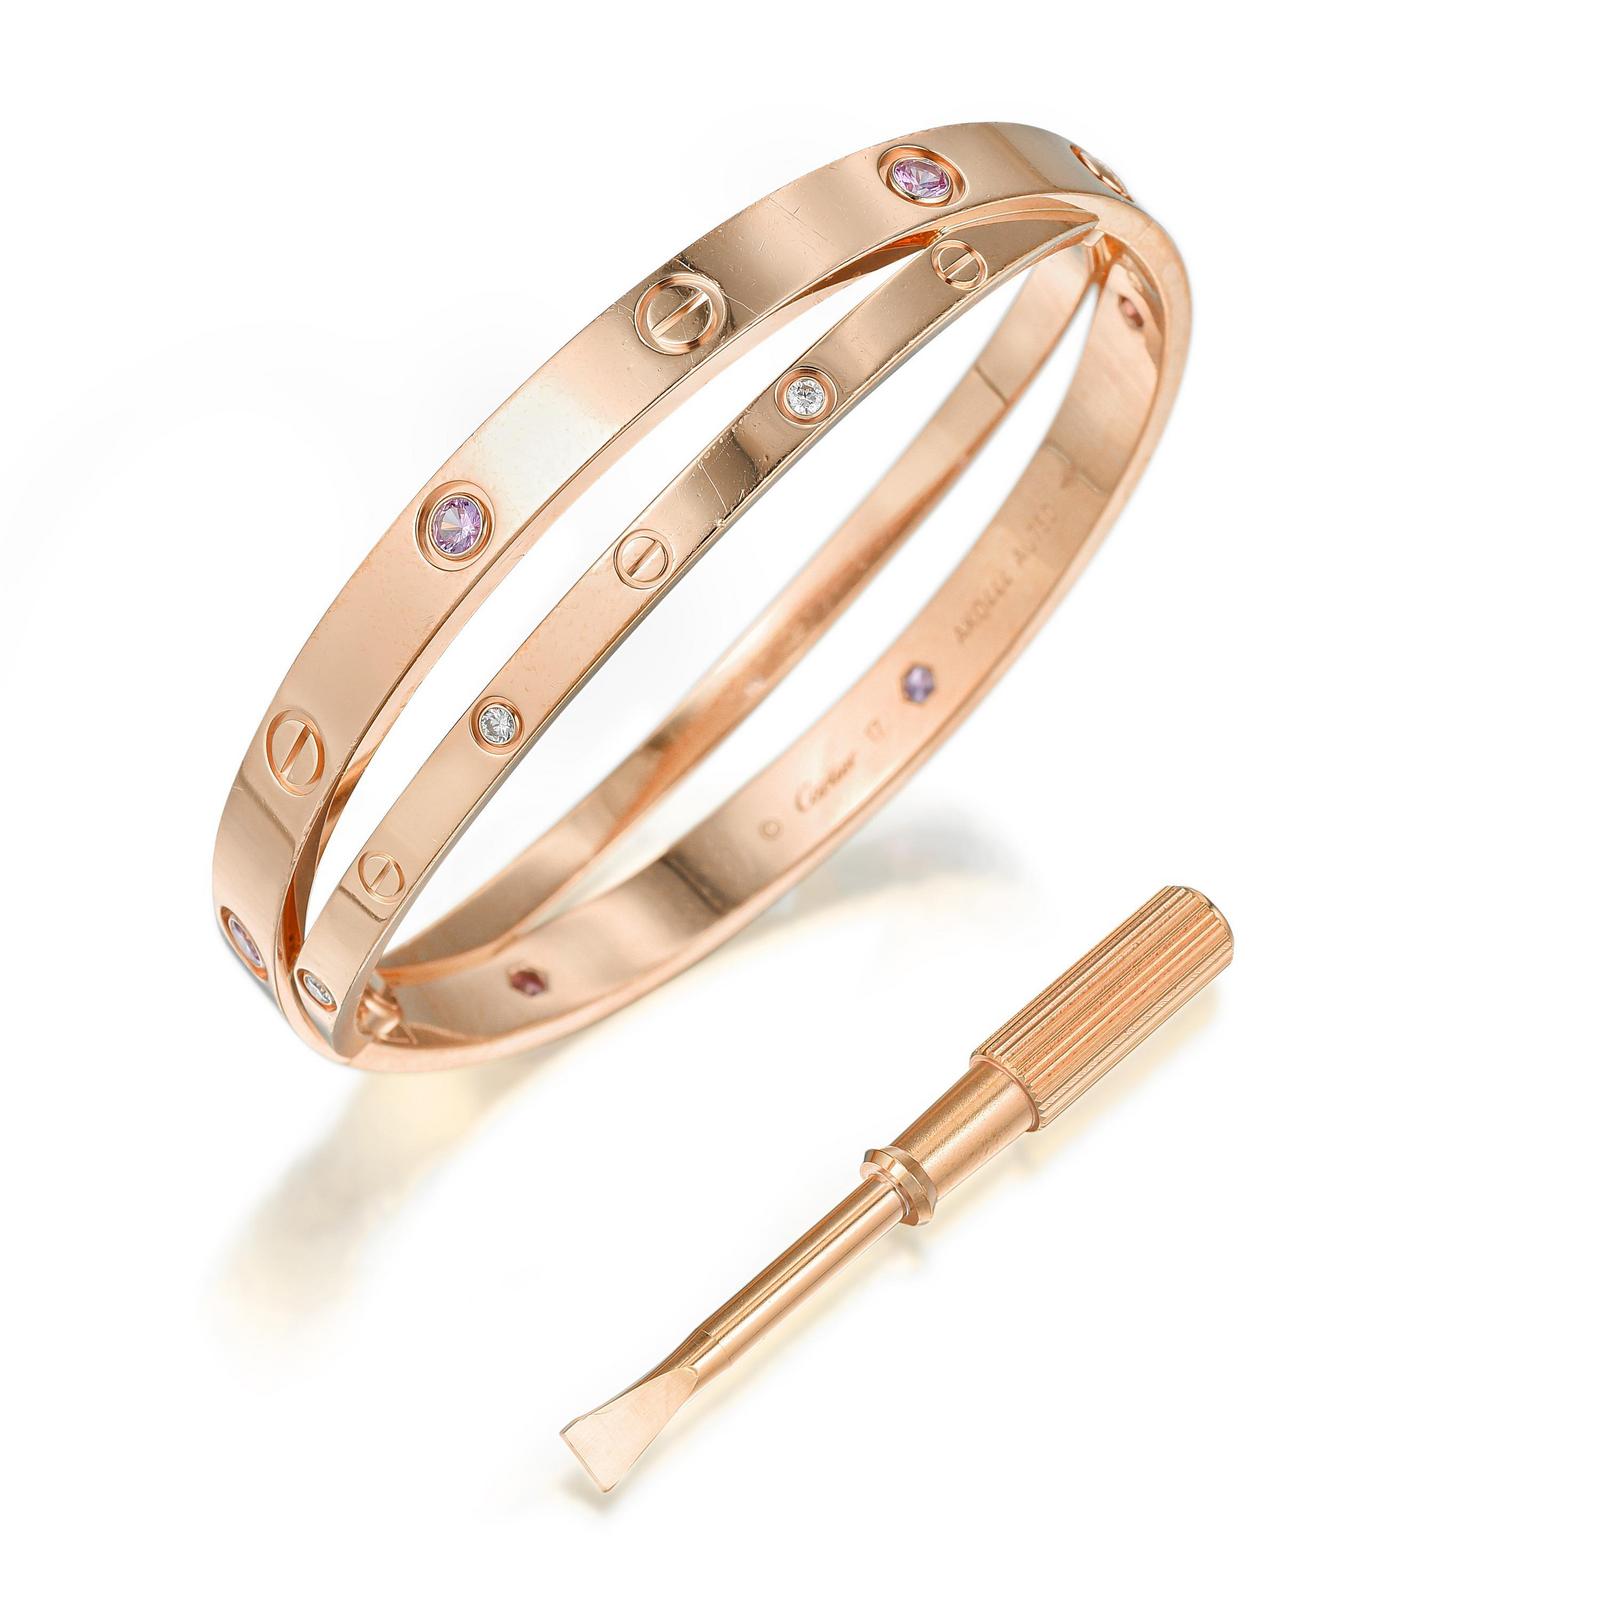 Love bracelet (Cartier) - Wikipedia